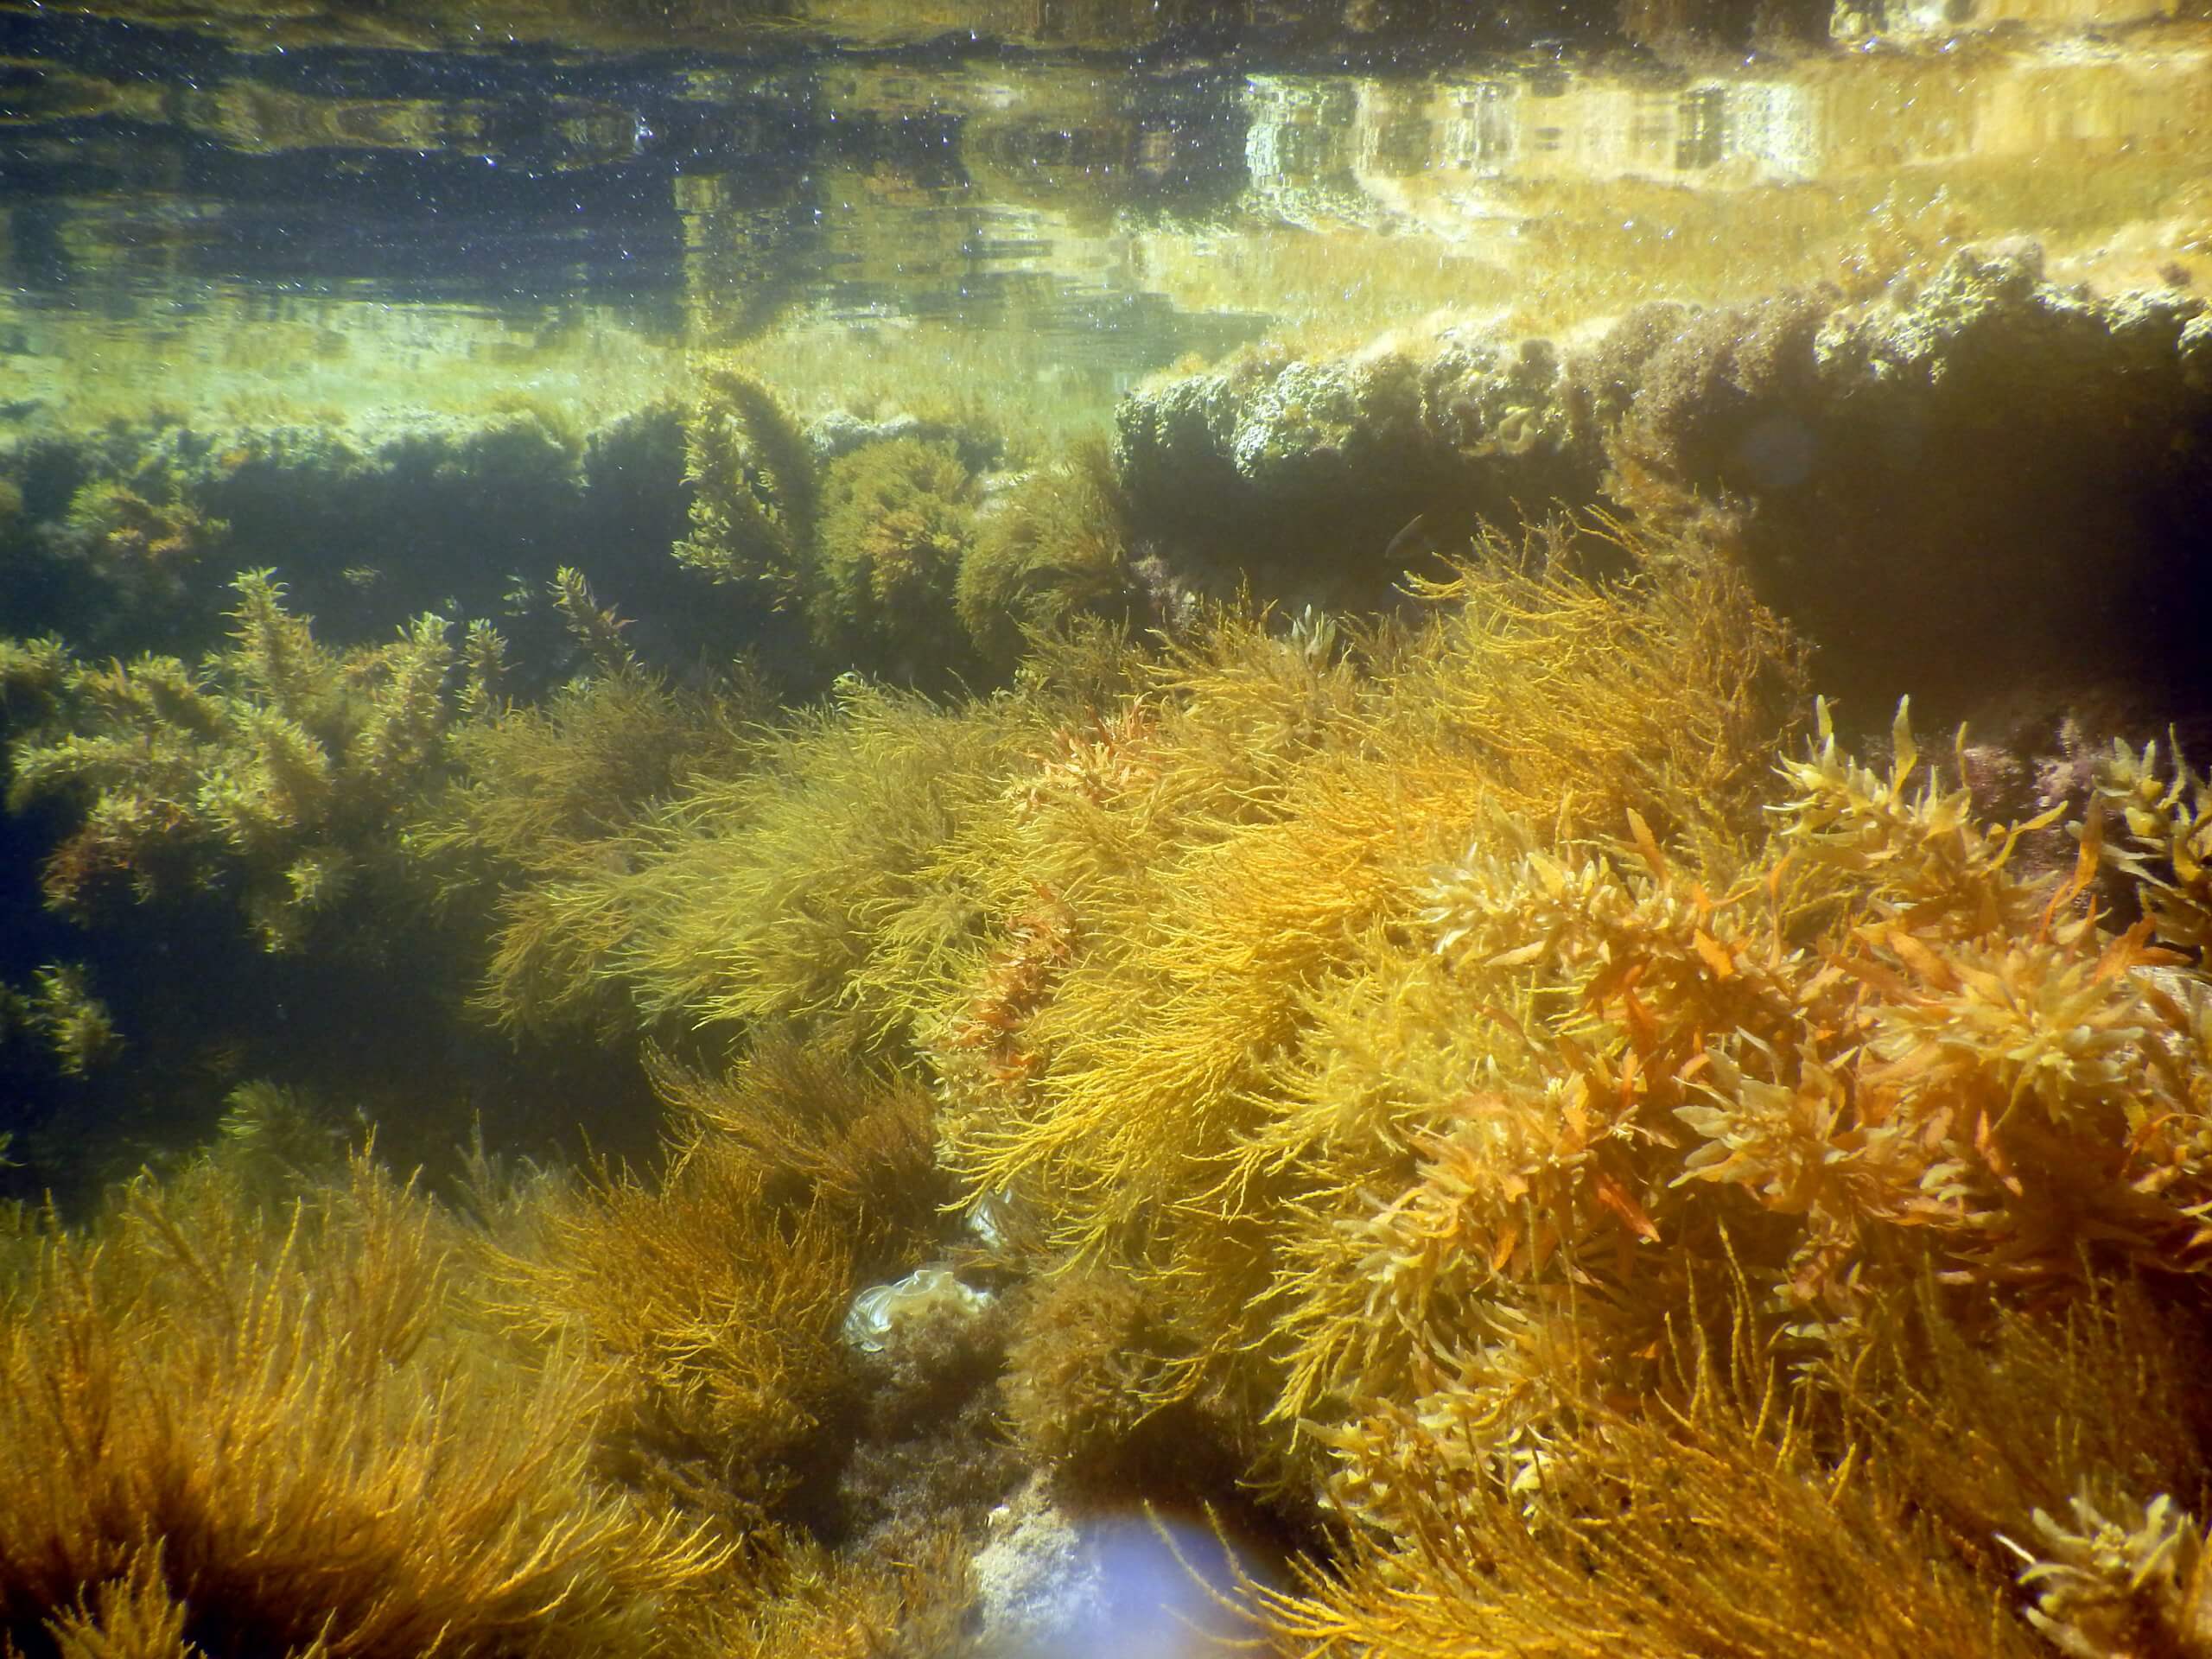 "אצות הן מרכיב מהותי בחברה הימית, מאחר שהן מהוות בית גידול שבו חיים עשרות ואף מאות מיני יצורים ימיים קטנים". צילום: מעבדת רילוב